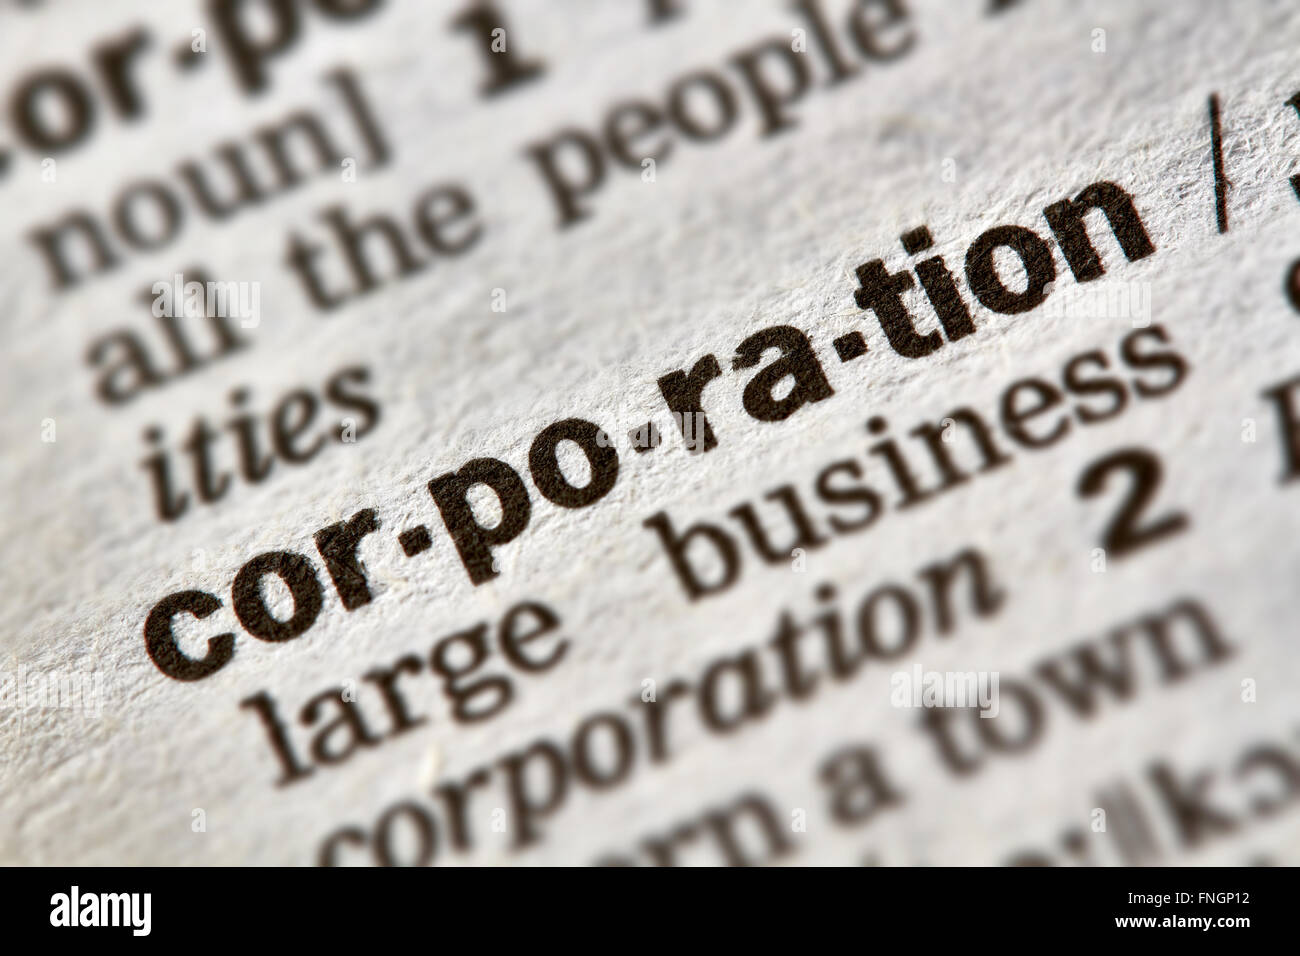 Corporation parola definizione testo nella pagina del dizionario Foto Stock